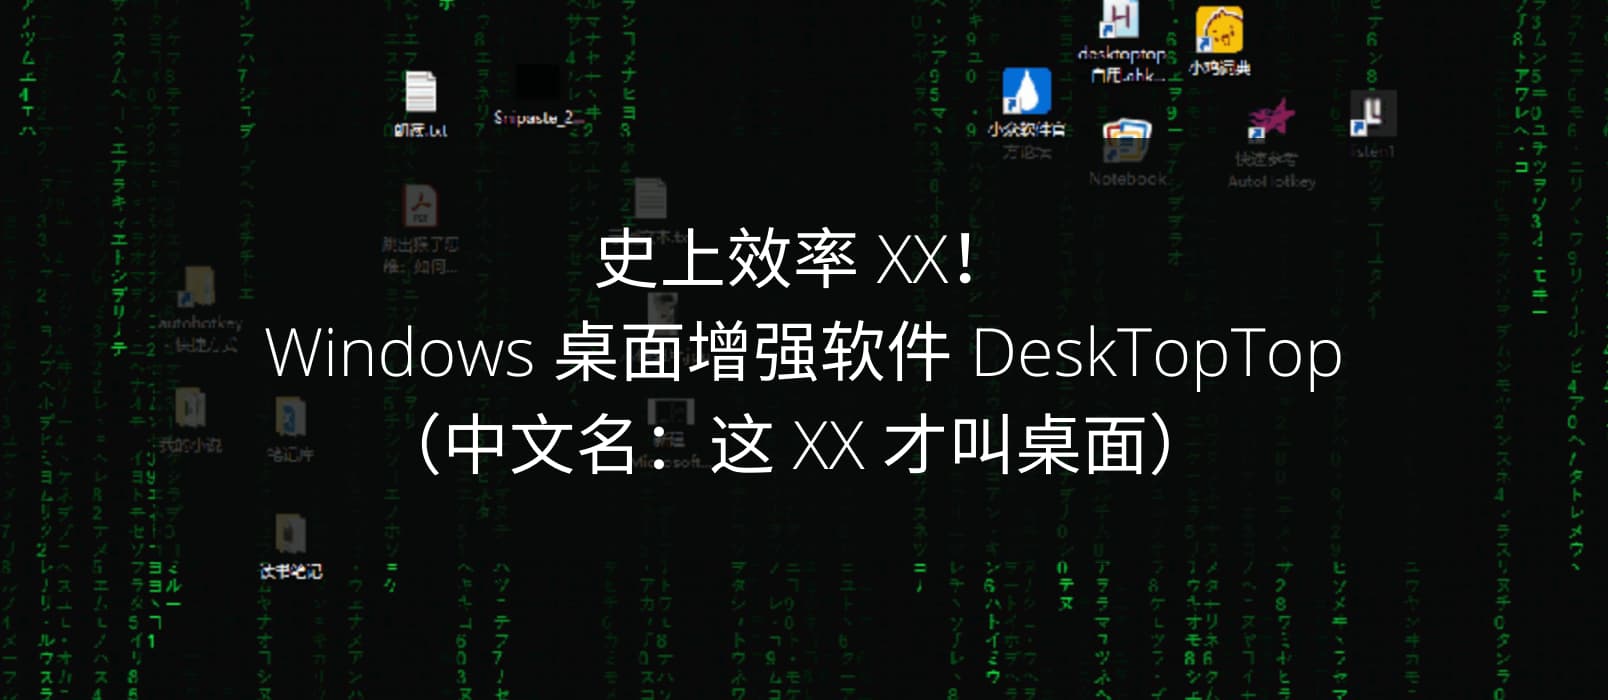 史上效率 XX！Windows 桌面增强软件 DeskTopTop（中文名：这 XX 才叫桌面）  1